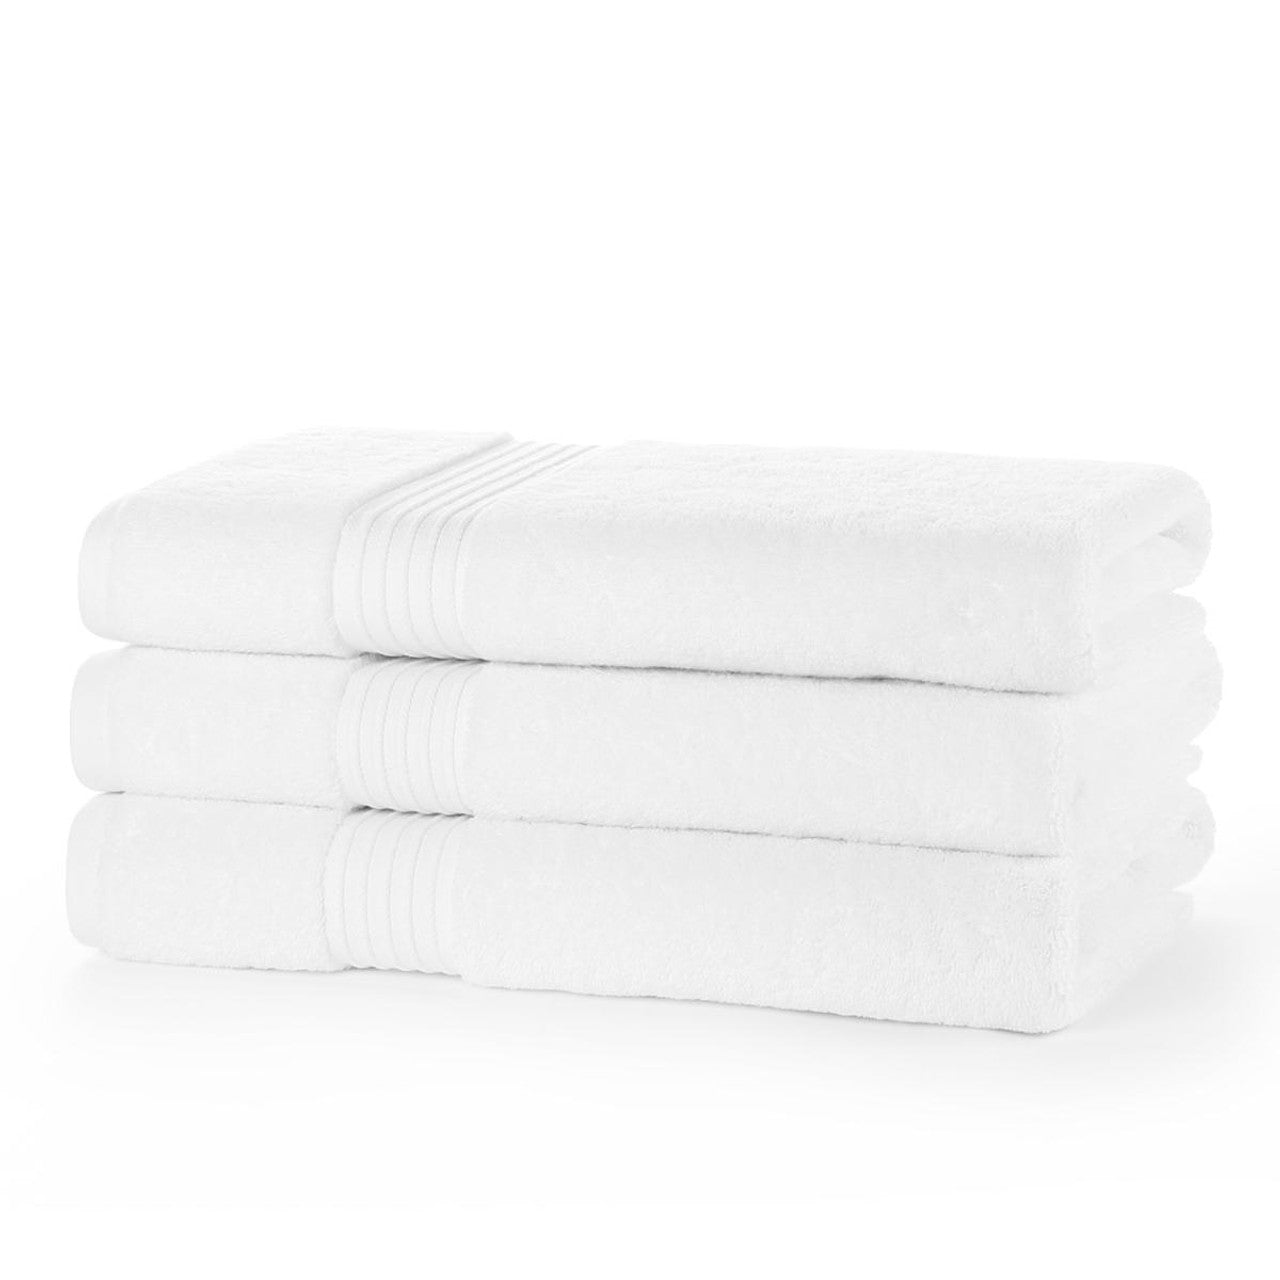 Cotton Mani Pedi Towel